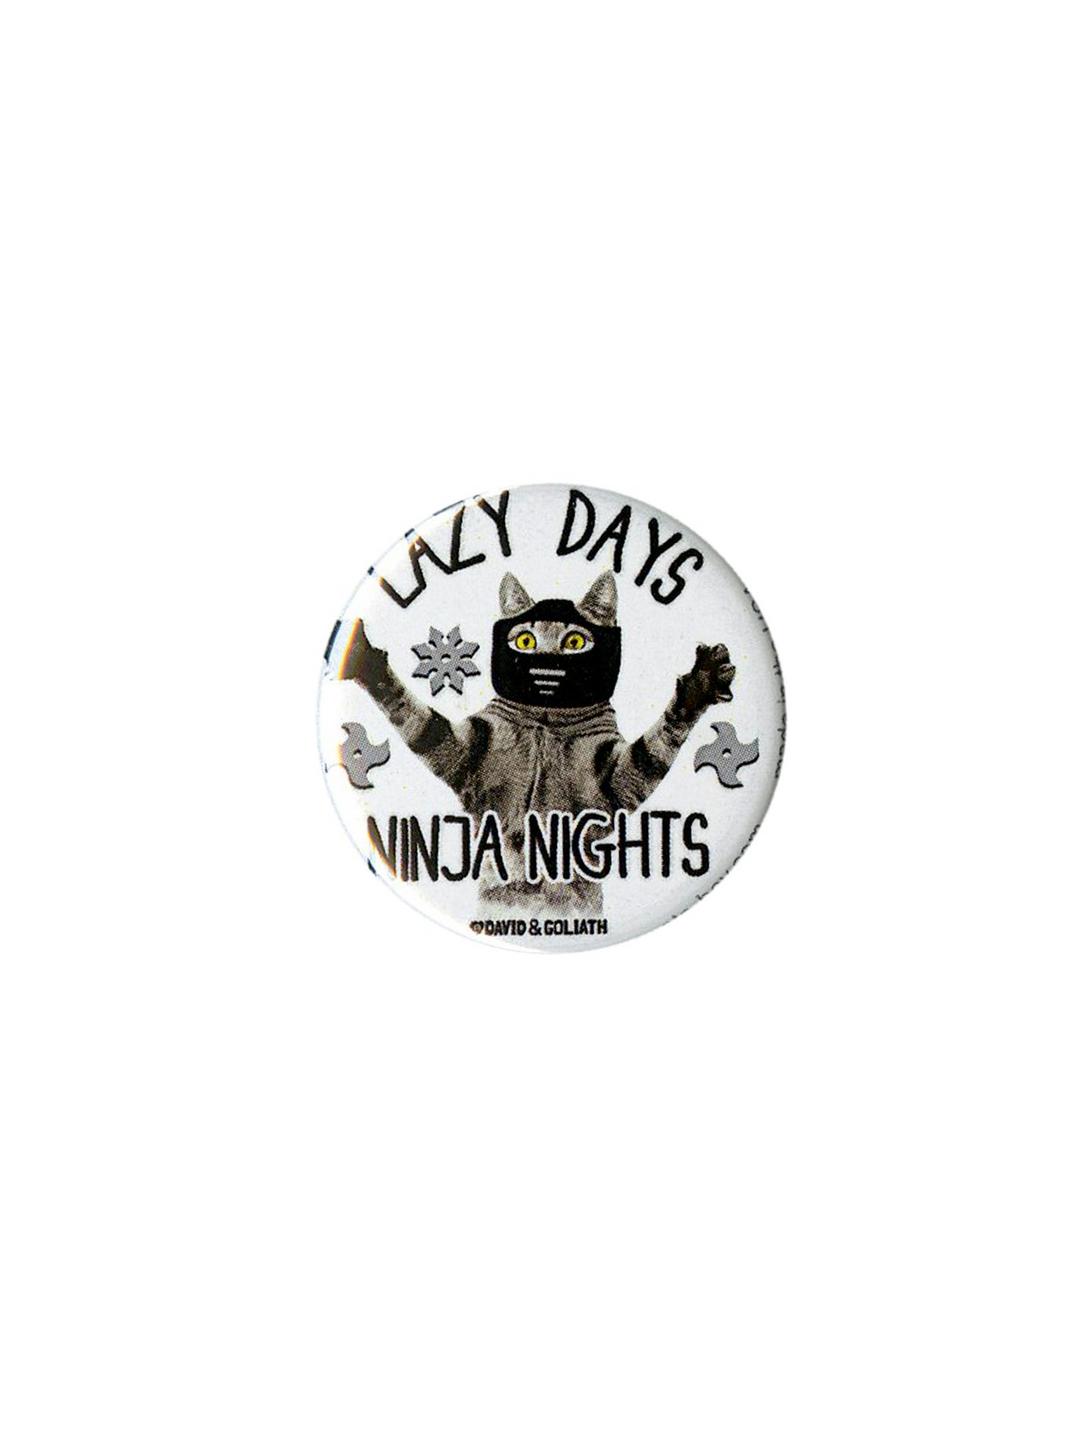 David & Goliath Lazy Days Ninja Nights Pin, , hi-res